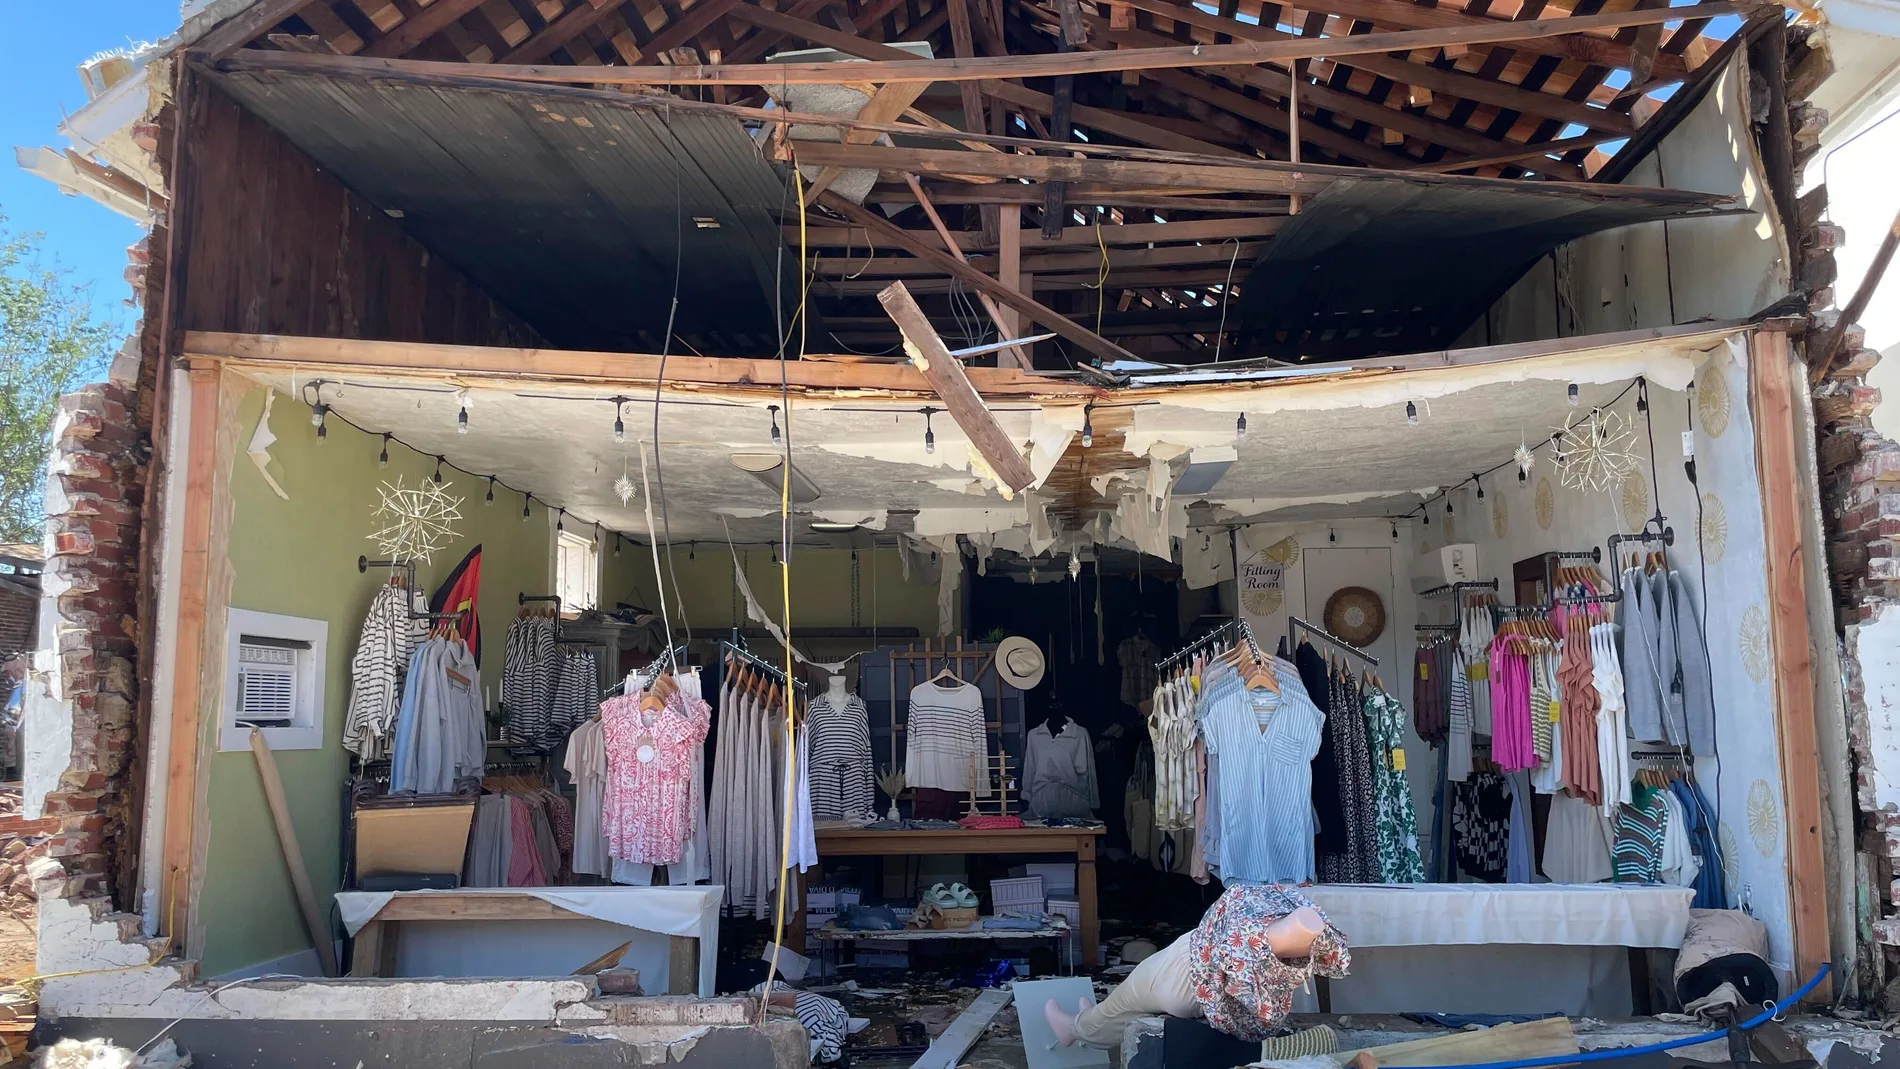 Daños causados en una tienda de ropa tras el paso de un tornado el pasado día 29 de abril en el estado de Oklahoma